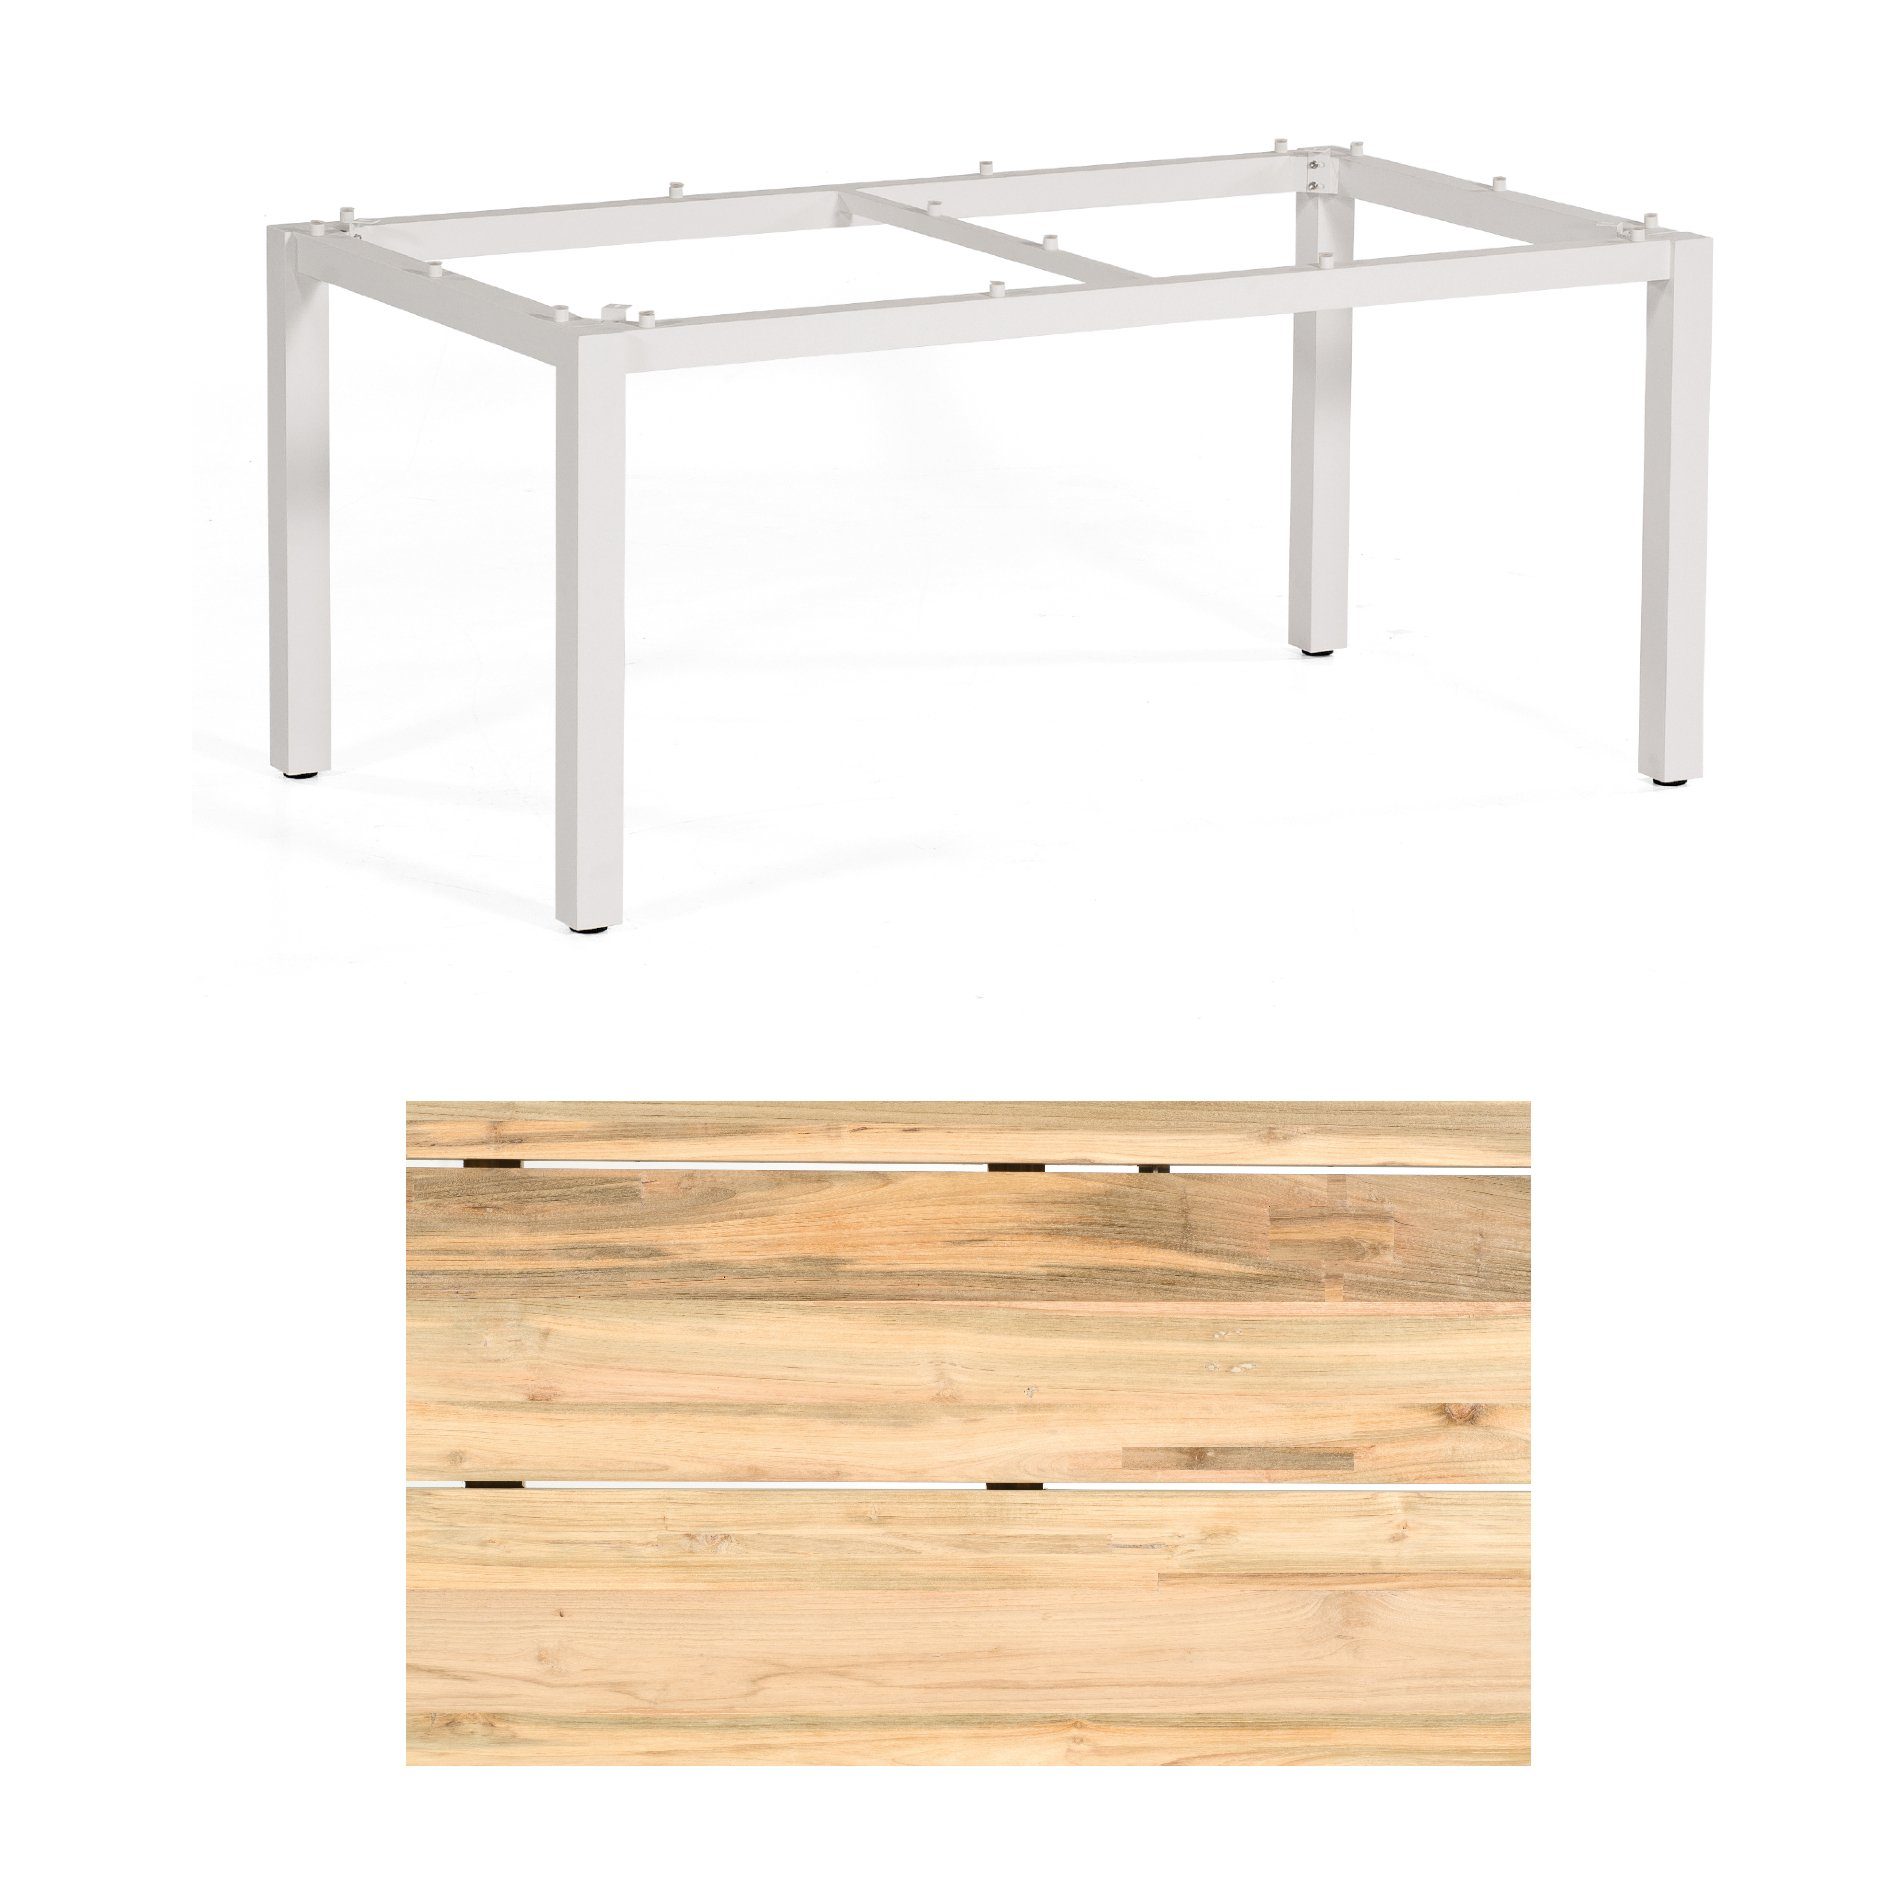 Sonnenpartner "Base" Gartentisch, Gestell Aluminium weiß, Tischplatte Old Teak Natur, Größe: 160x90 cm